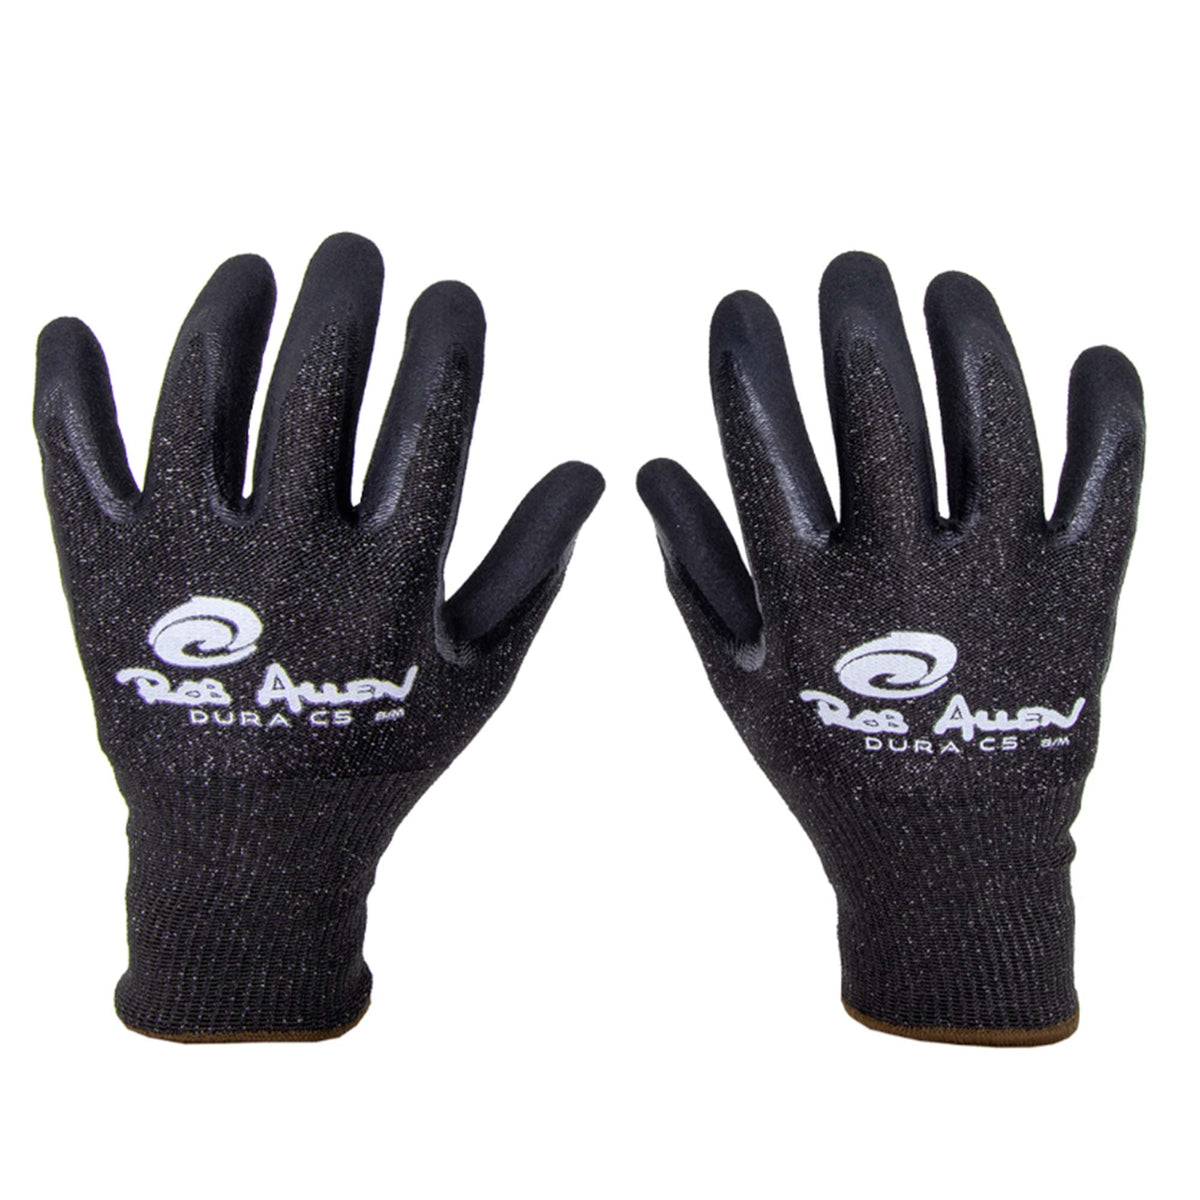 Rob Allen Nitrile Gloves - FreedivingWarehouse